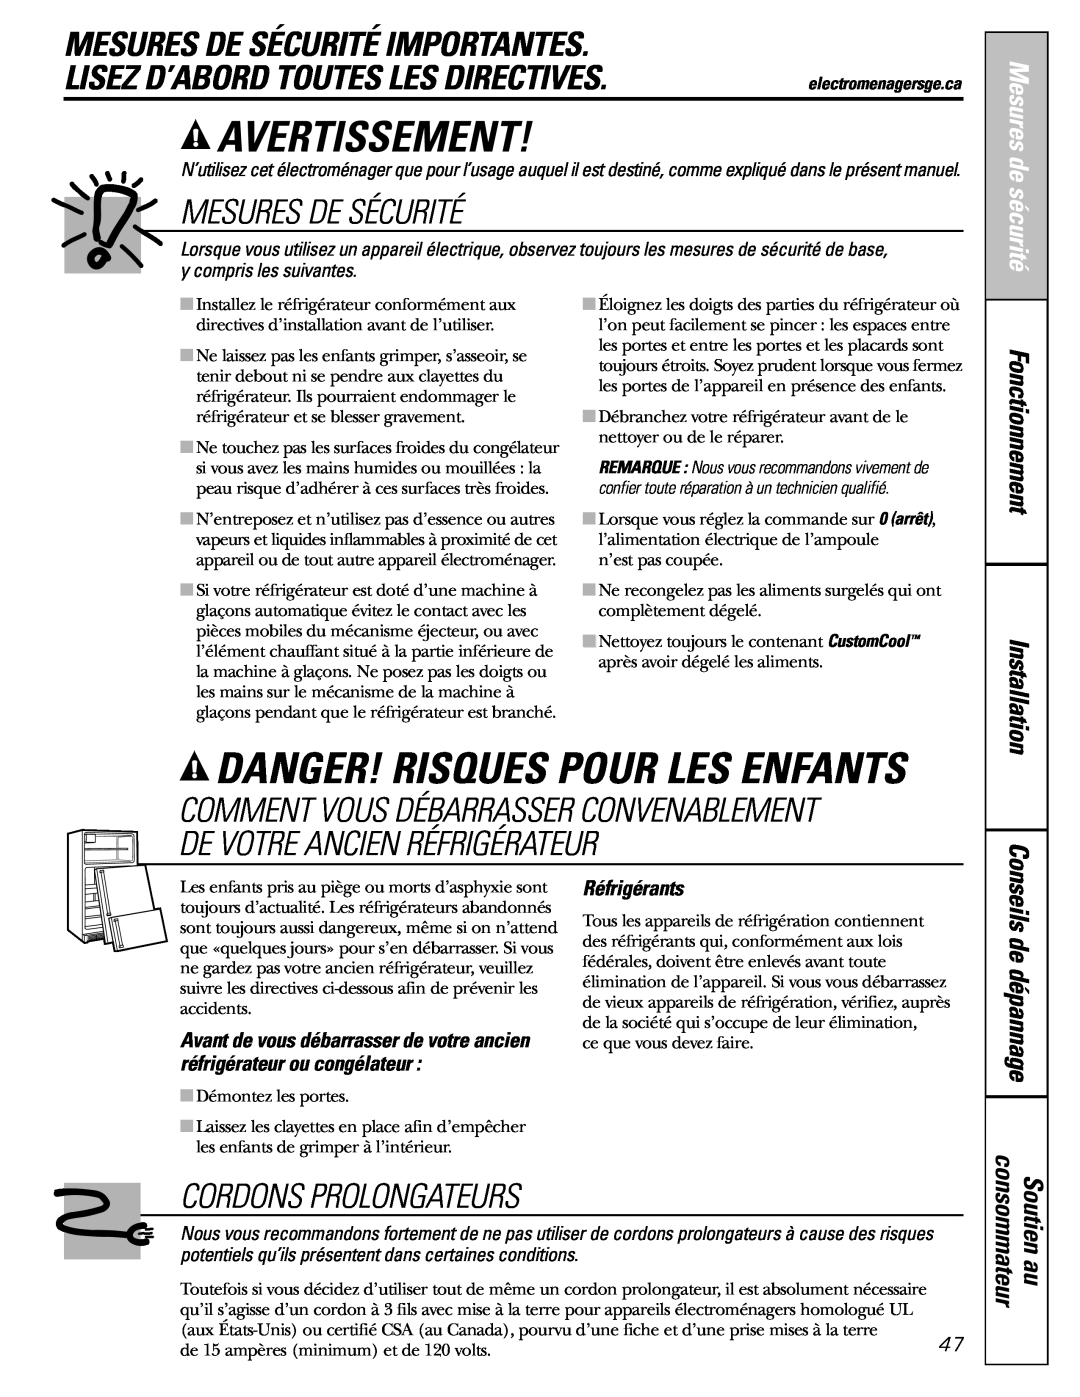 GE 200D8074P009 Avertissement, Danger! Risques Pour Les Enfants, Mesures De Sécurité Importantes, Cordons Prolongateurs 